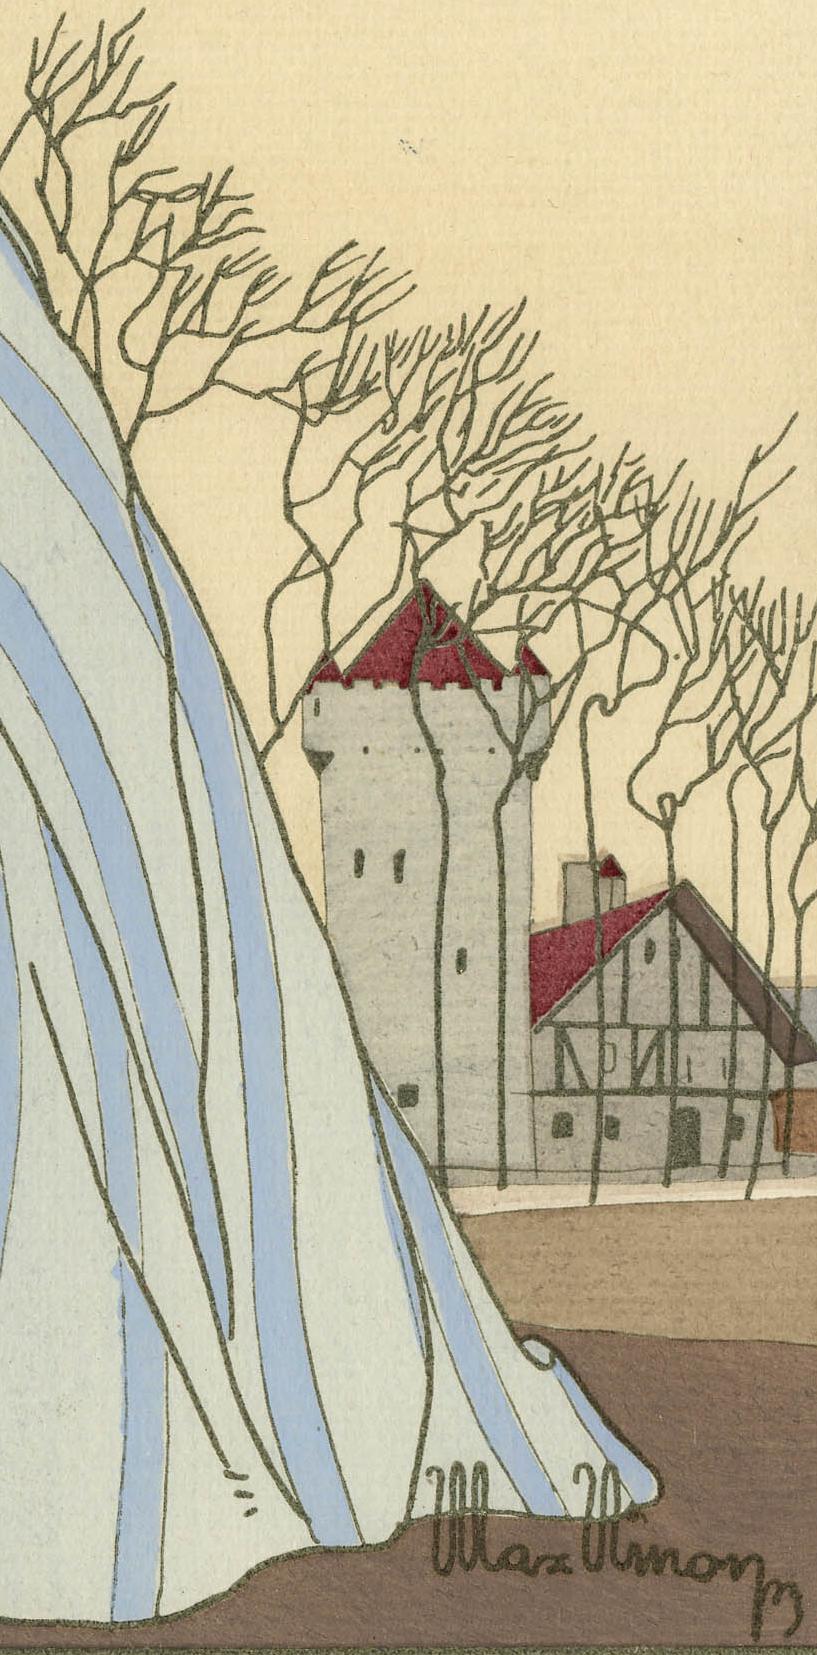 Robe Grise
Pochoir (Siebdruck) in Farben gedruckt, 1923
Signiert vom Künstler mit Bleistift unten rechts (siehe Foto)
Der Künstler gewann 1925 in Paris eine Goldmedaille für seine Pochoirs
Zustand: Zwei druckbedingte Flecken in der linken oberen